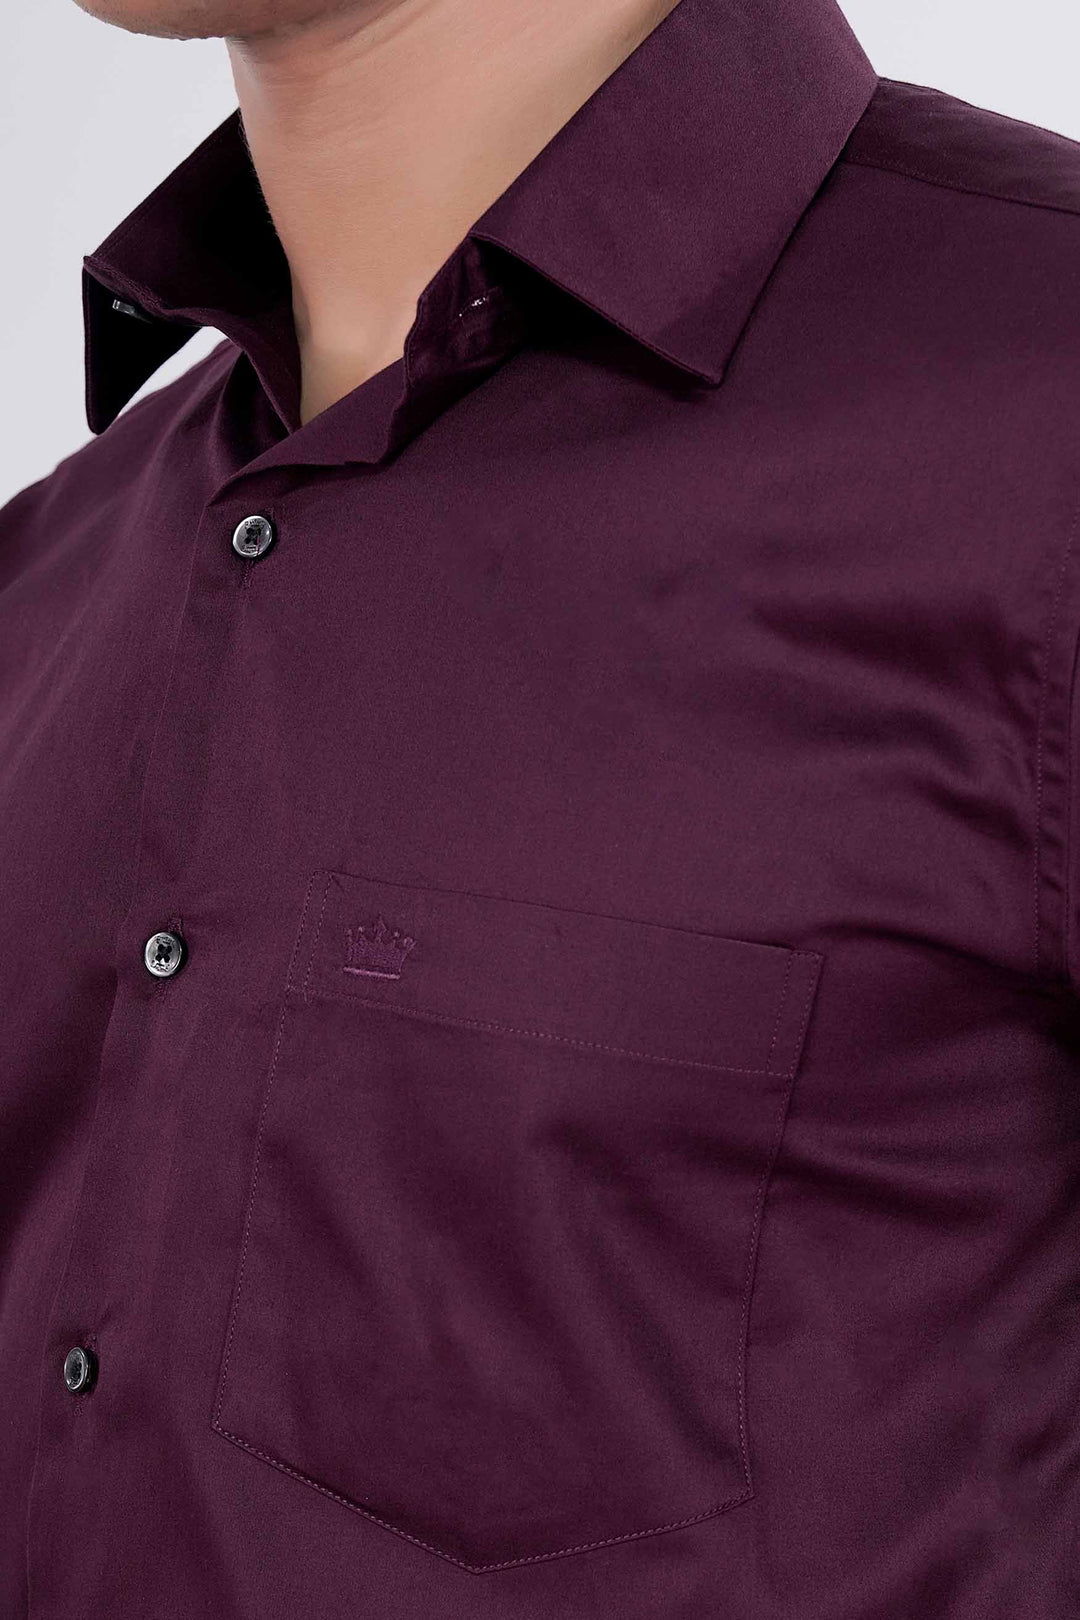 Berlin Trend Men Solid Formal Purple Shirt - Buy Berlin Trend Men Solid  Formal Purple Shirt Online at Best Prices in India | Flipkart.com